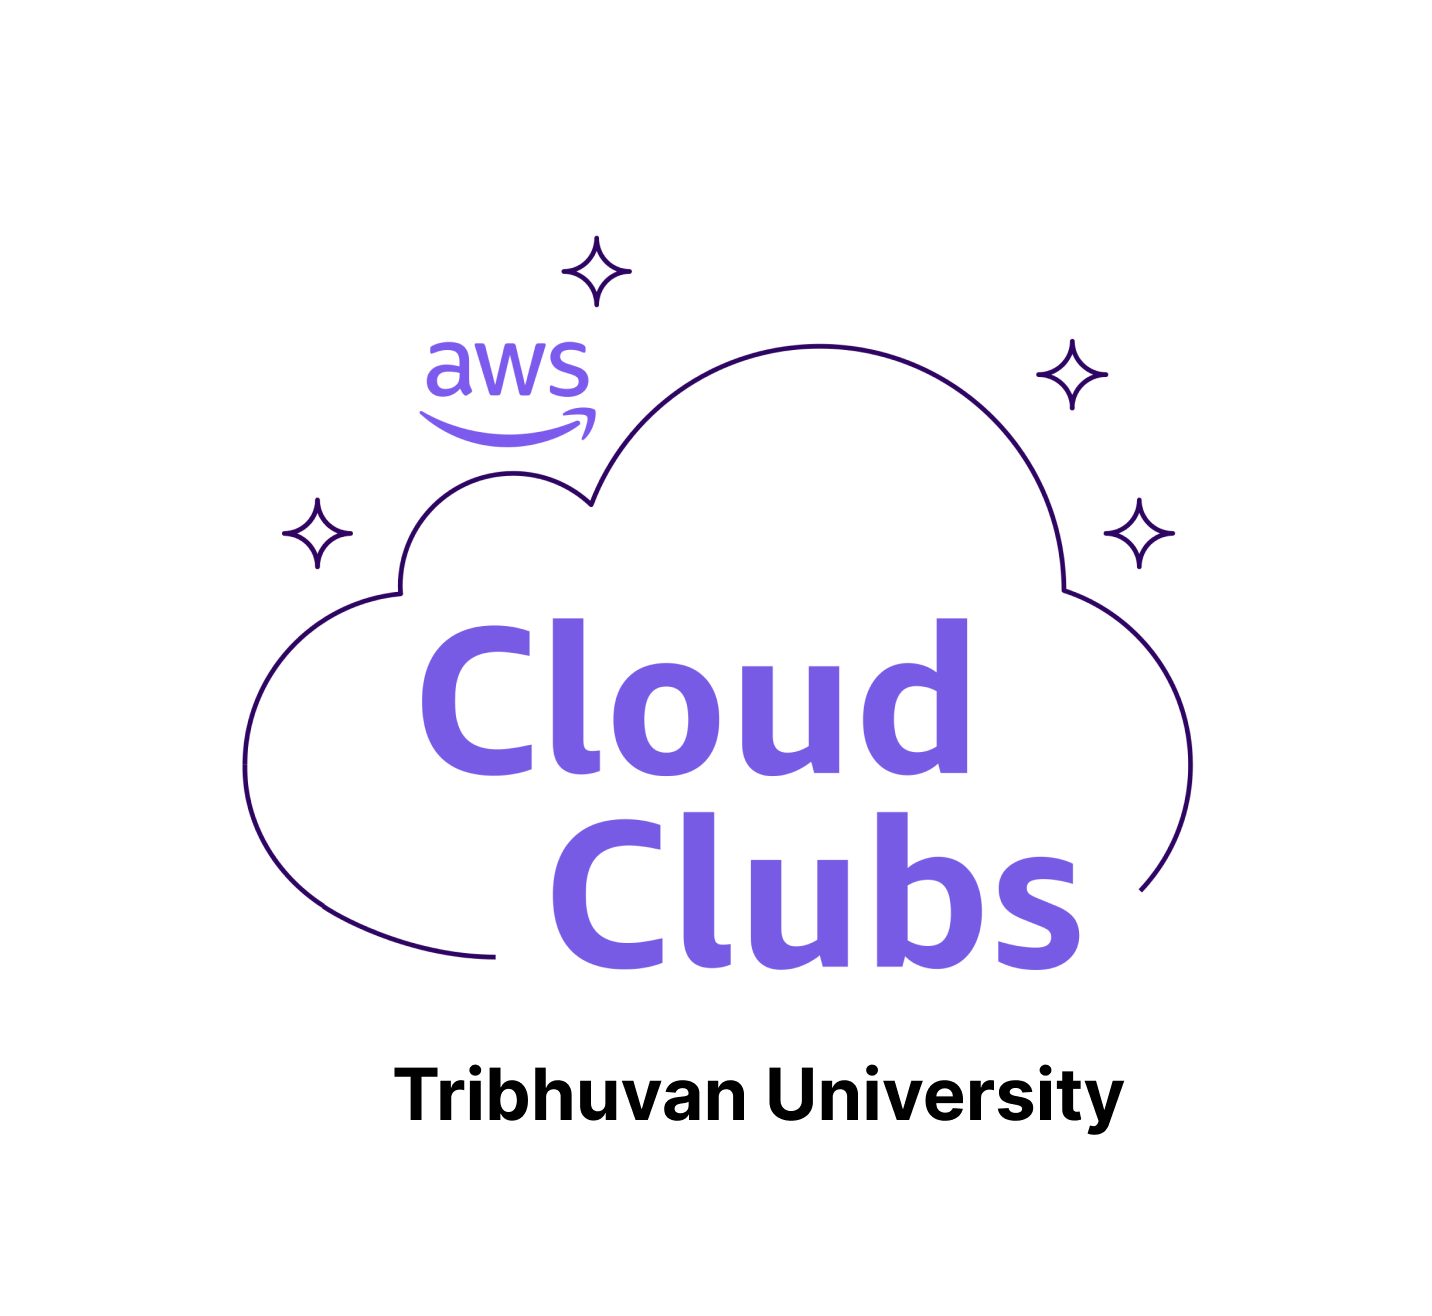 AWS Cloud Club